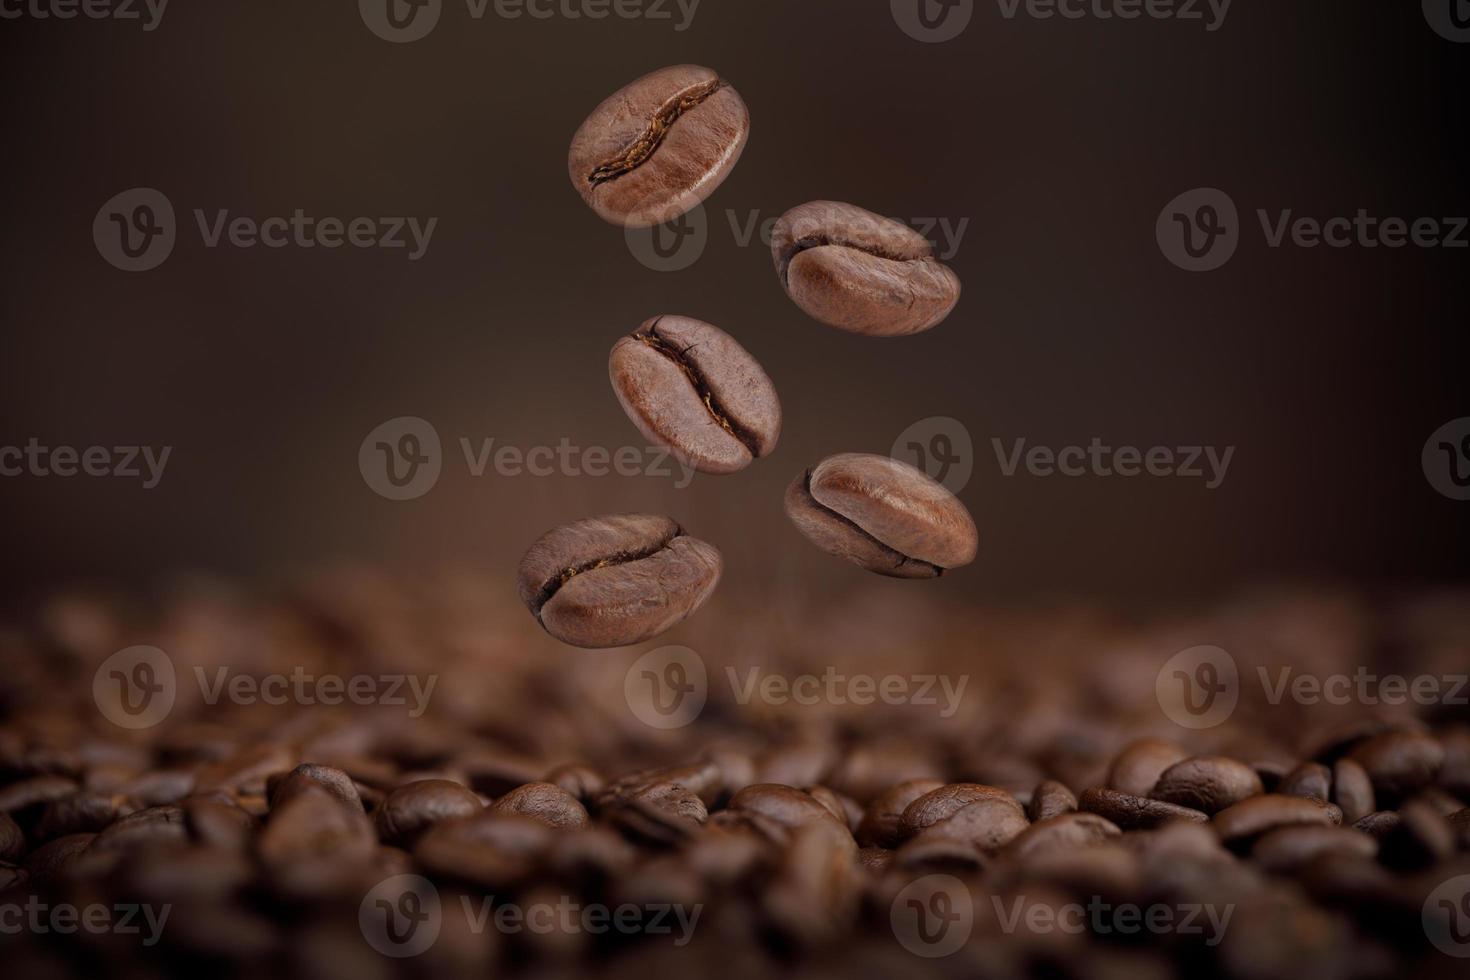 o calor dos grãos de café torrados castanhos caindo do ar no fundo marrom, produtos saudáveis pelo conceito de ingredientes naturais orgânicos foto